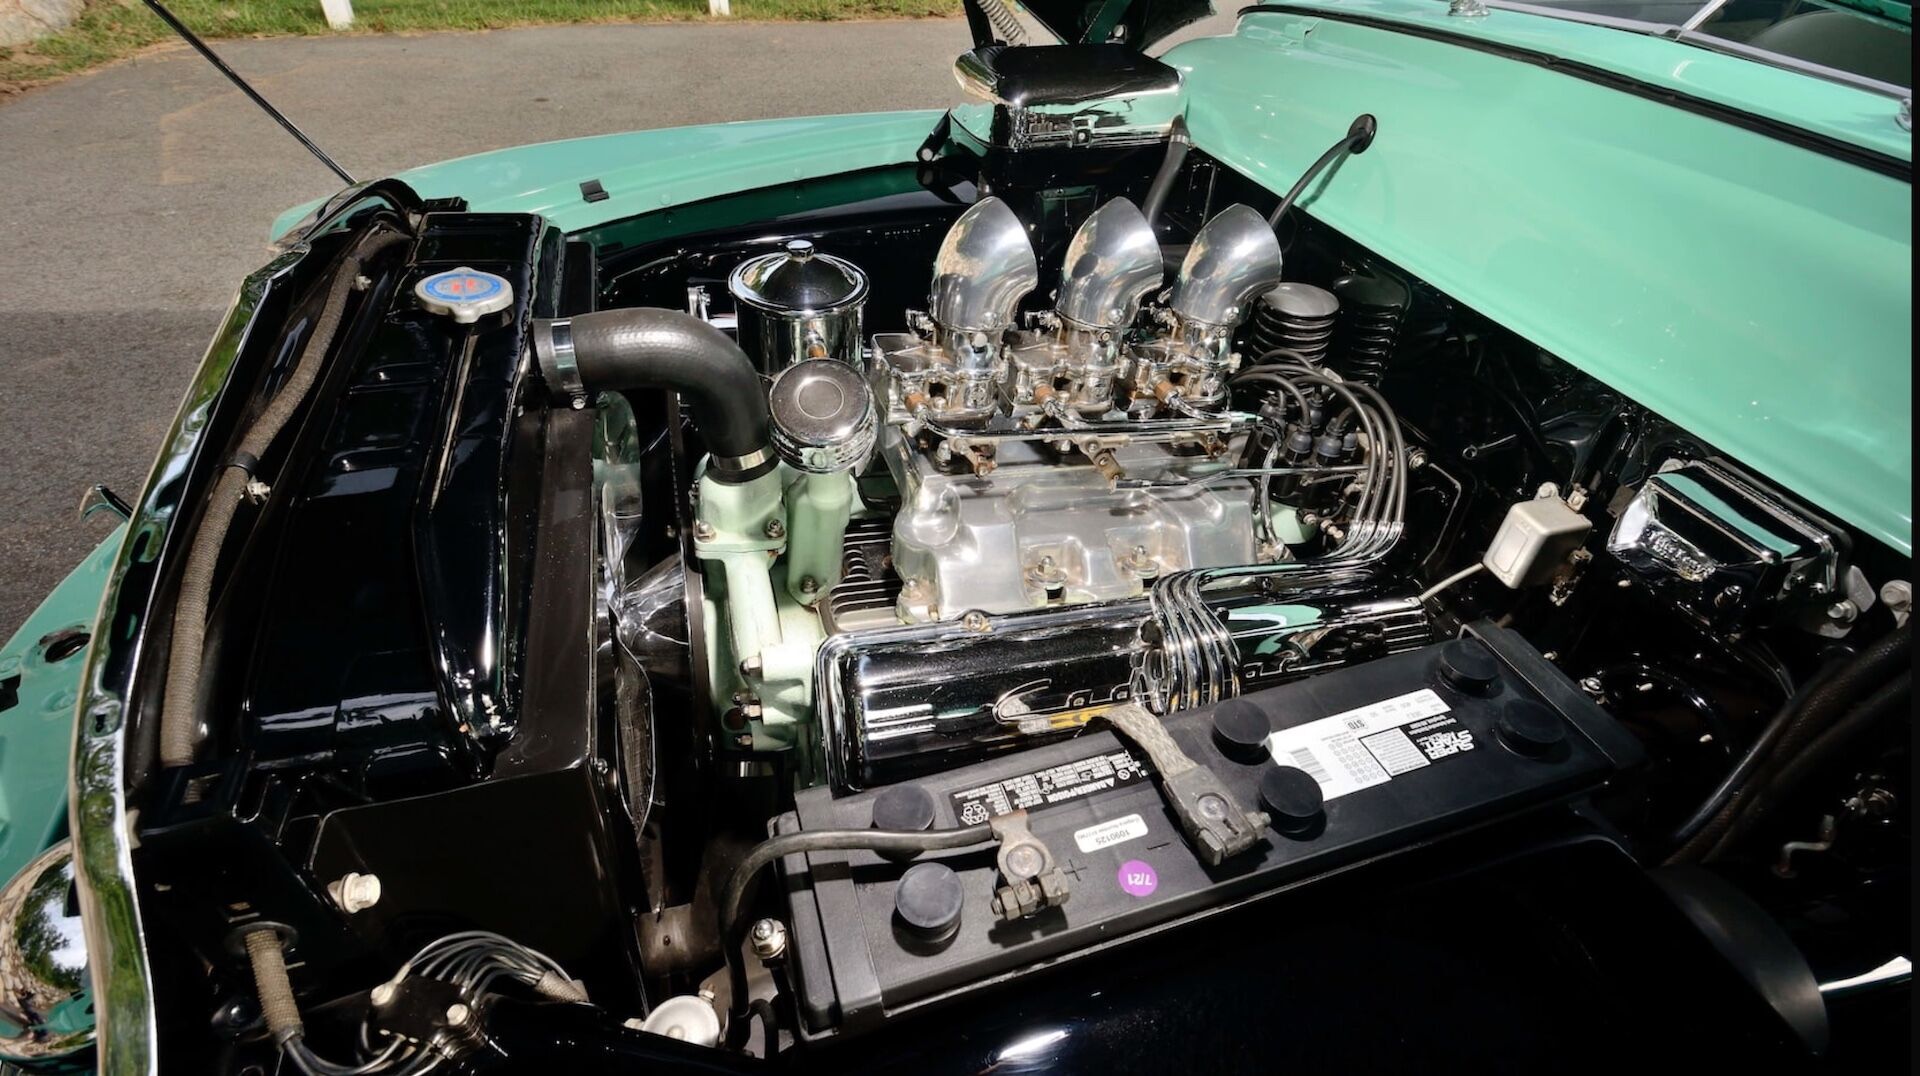 Под капотом расположился мотор Cadillac V8 с тремя карбюраторами Stromberg